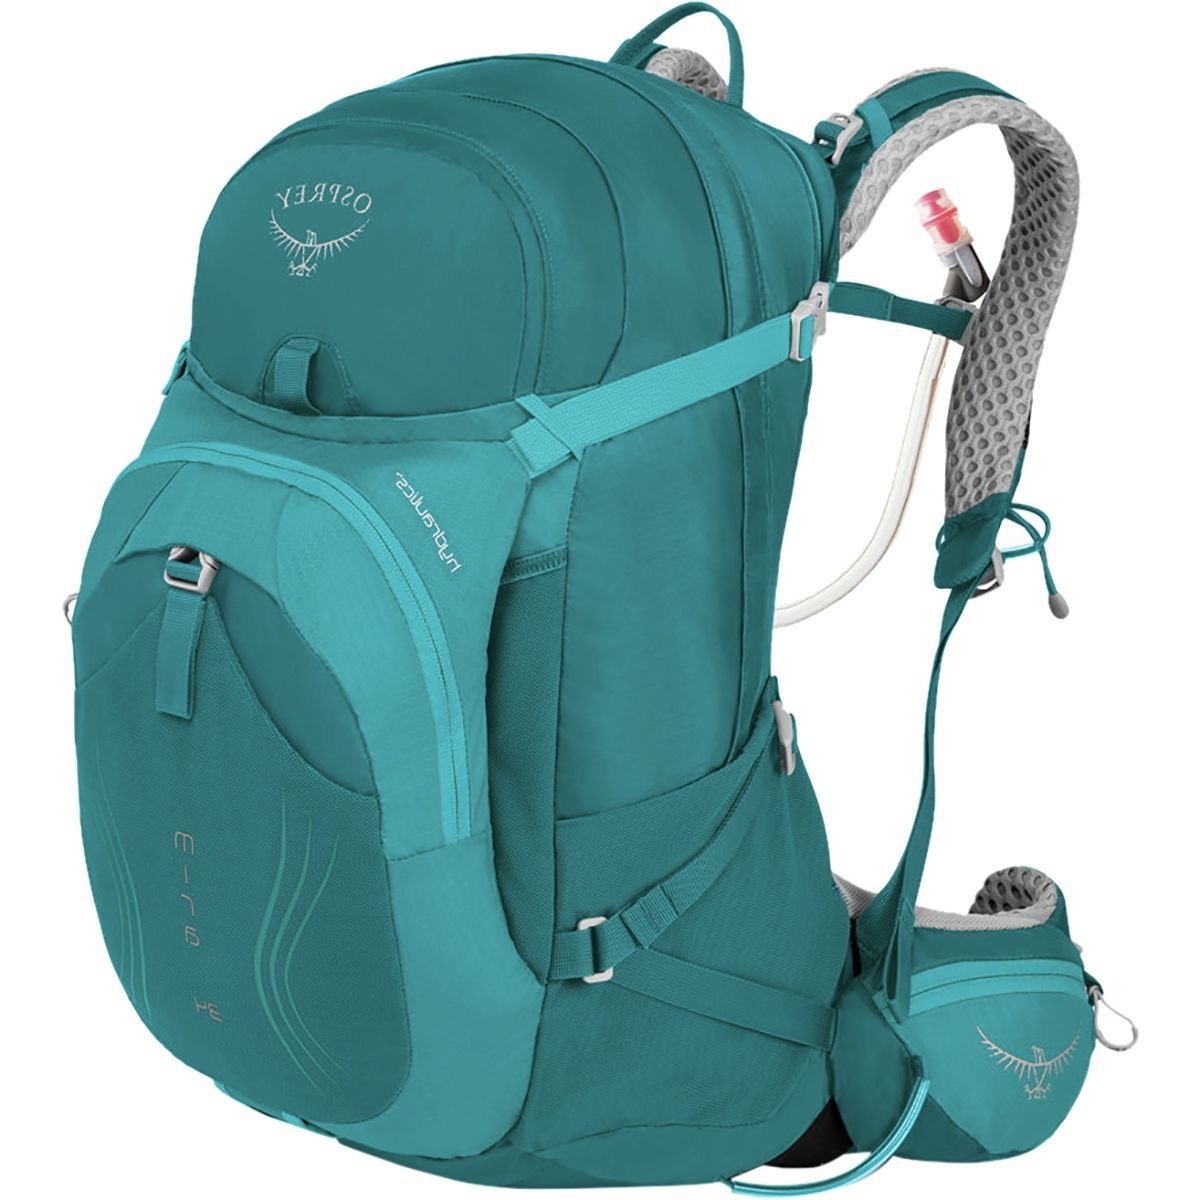 Osprey Packs Mira AG 34L Backpack - Women's